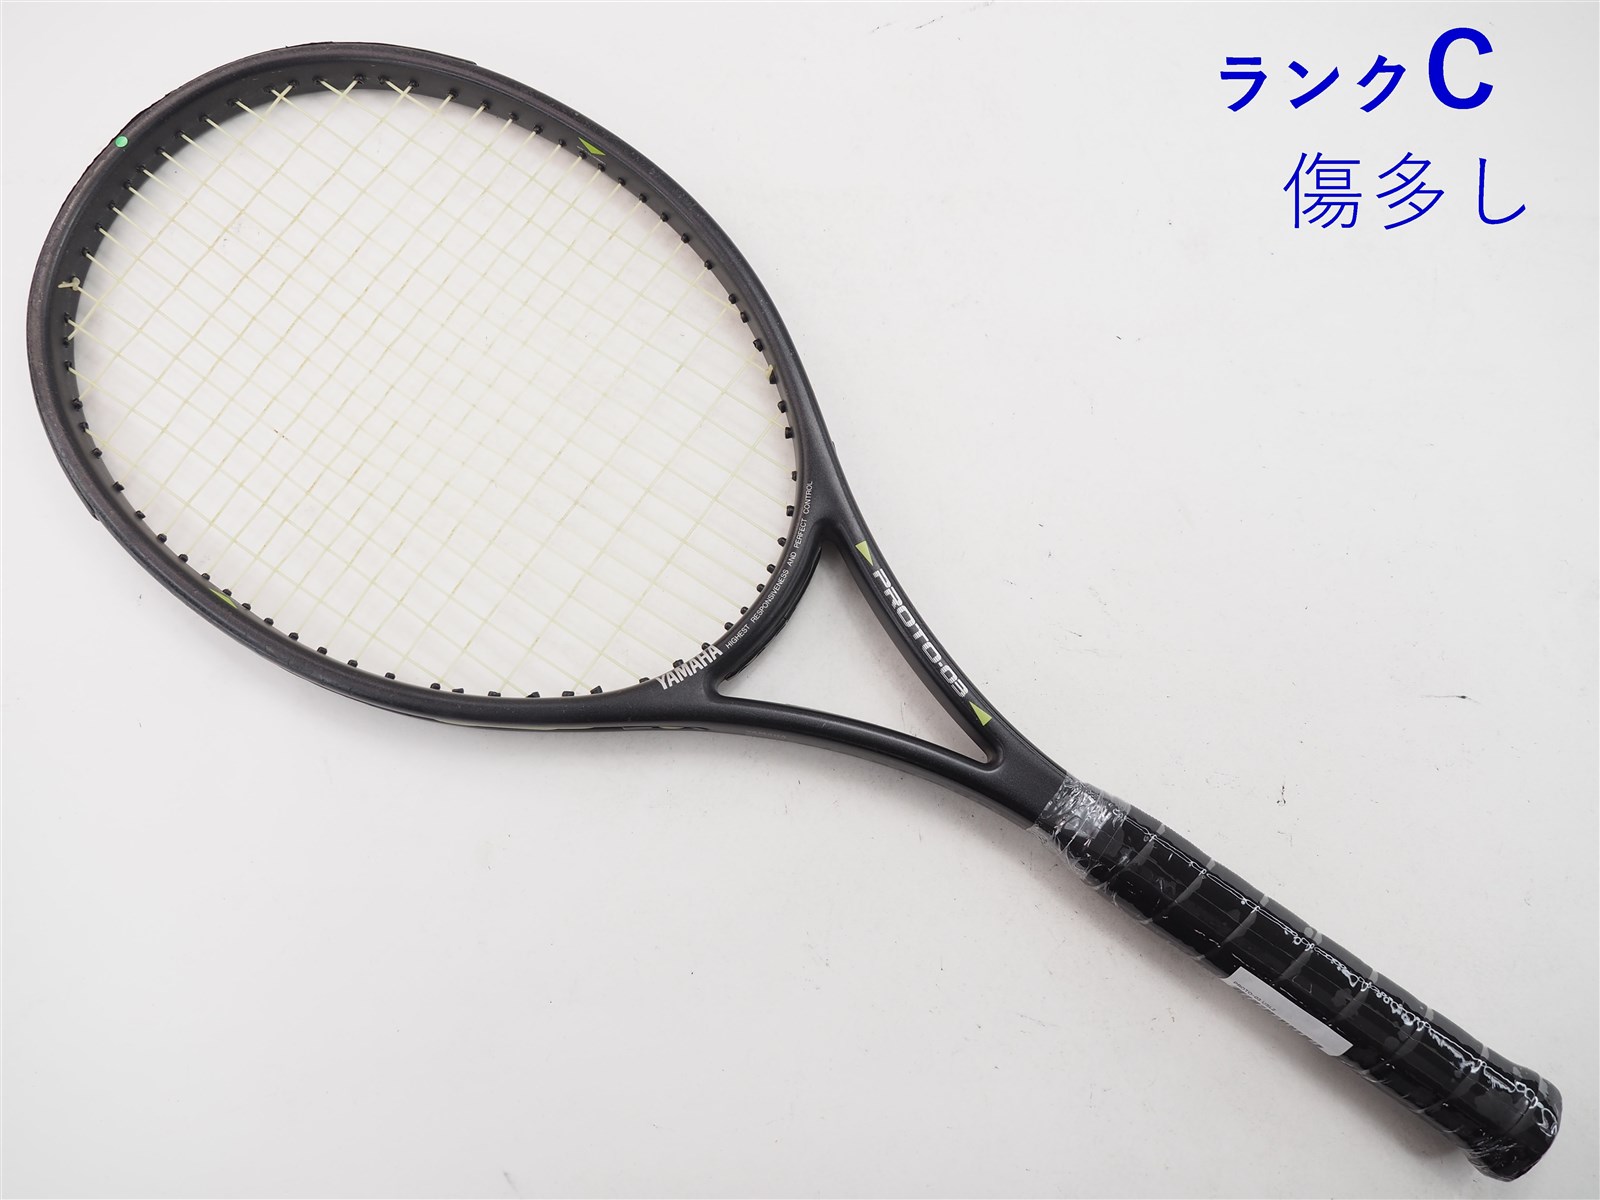 中古】ヤマハ プロト-03【トップバンパー割れ有り】YAMAHA PROTO-03(USL2)【中古 テニスラケット】の通販・販売| ヤマハ| テニス サポートセンターへ